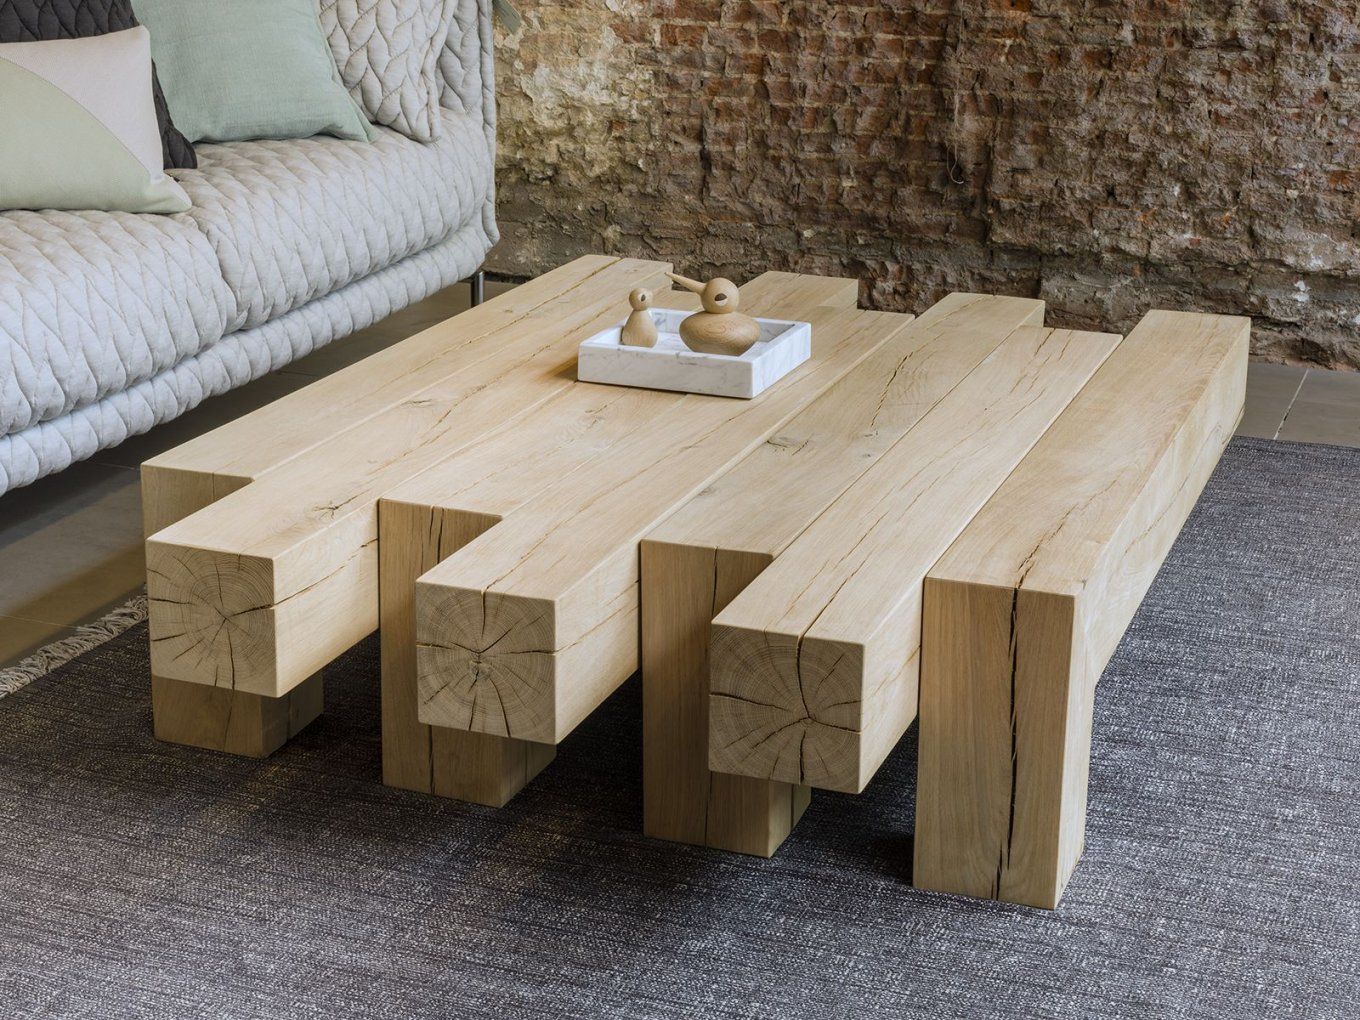 Pin Von Marcin Gargas Auf Park  Pinterest  Tisch Möbel Und Holz von Rustikale Möbel Selber Bauen Bild